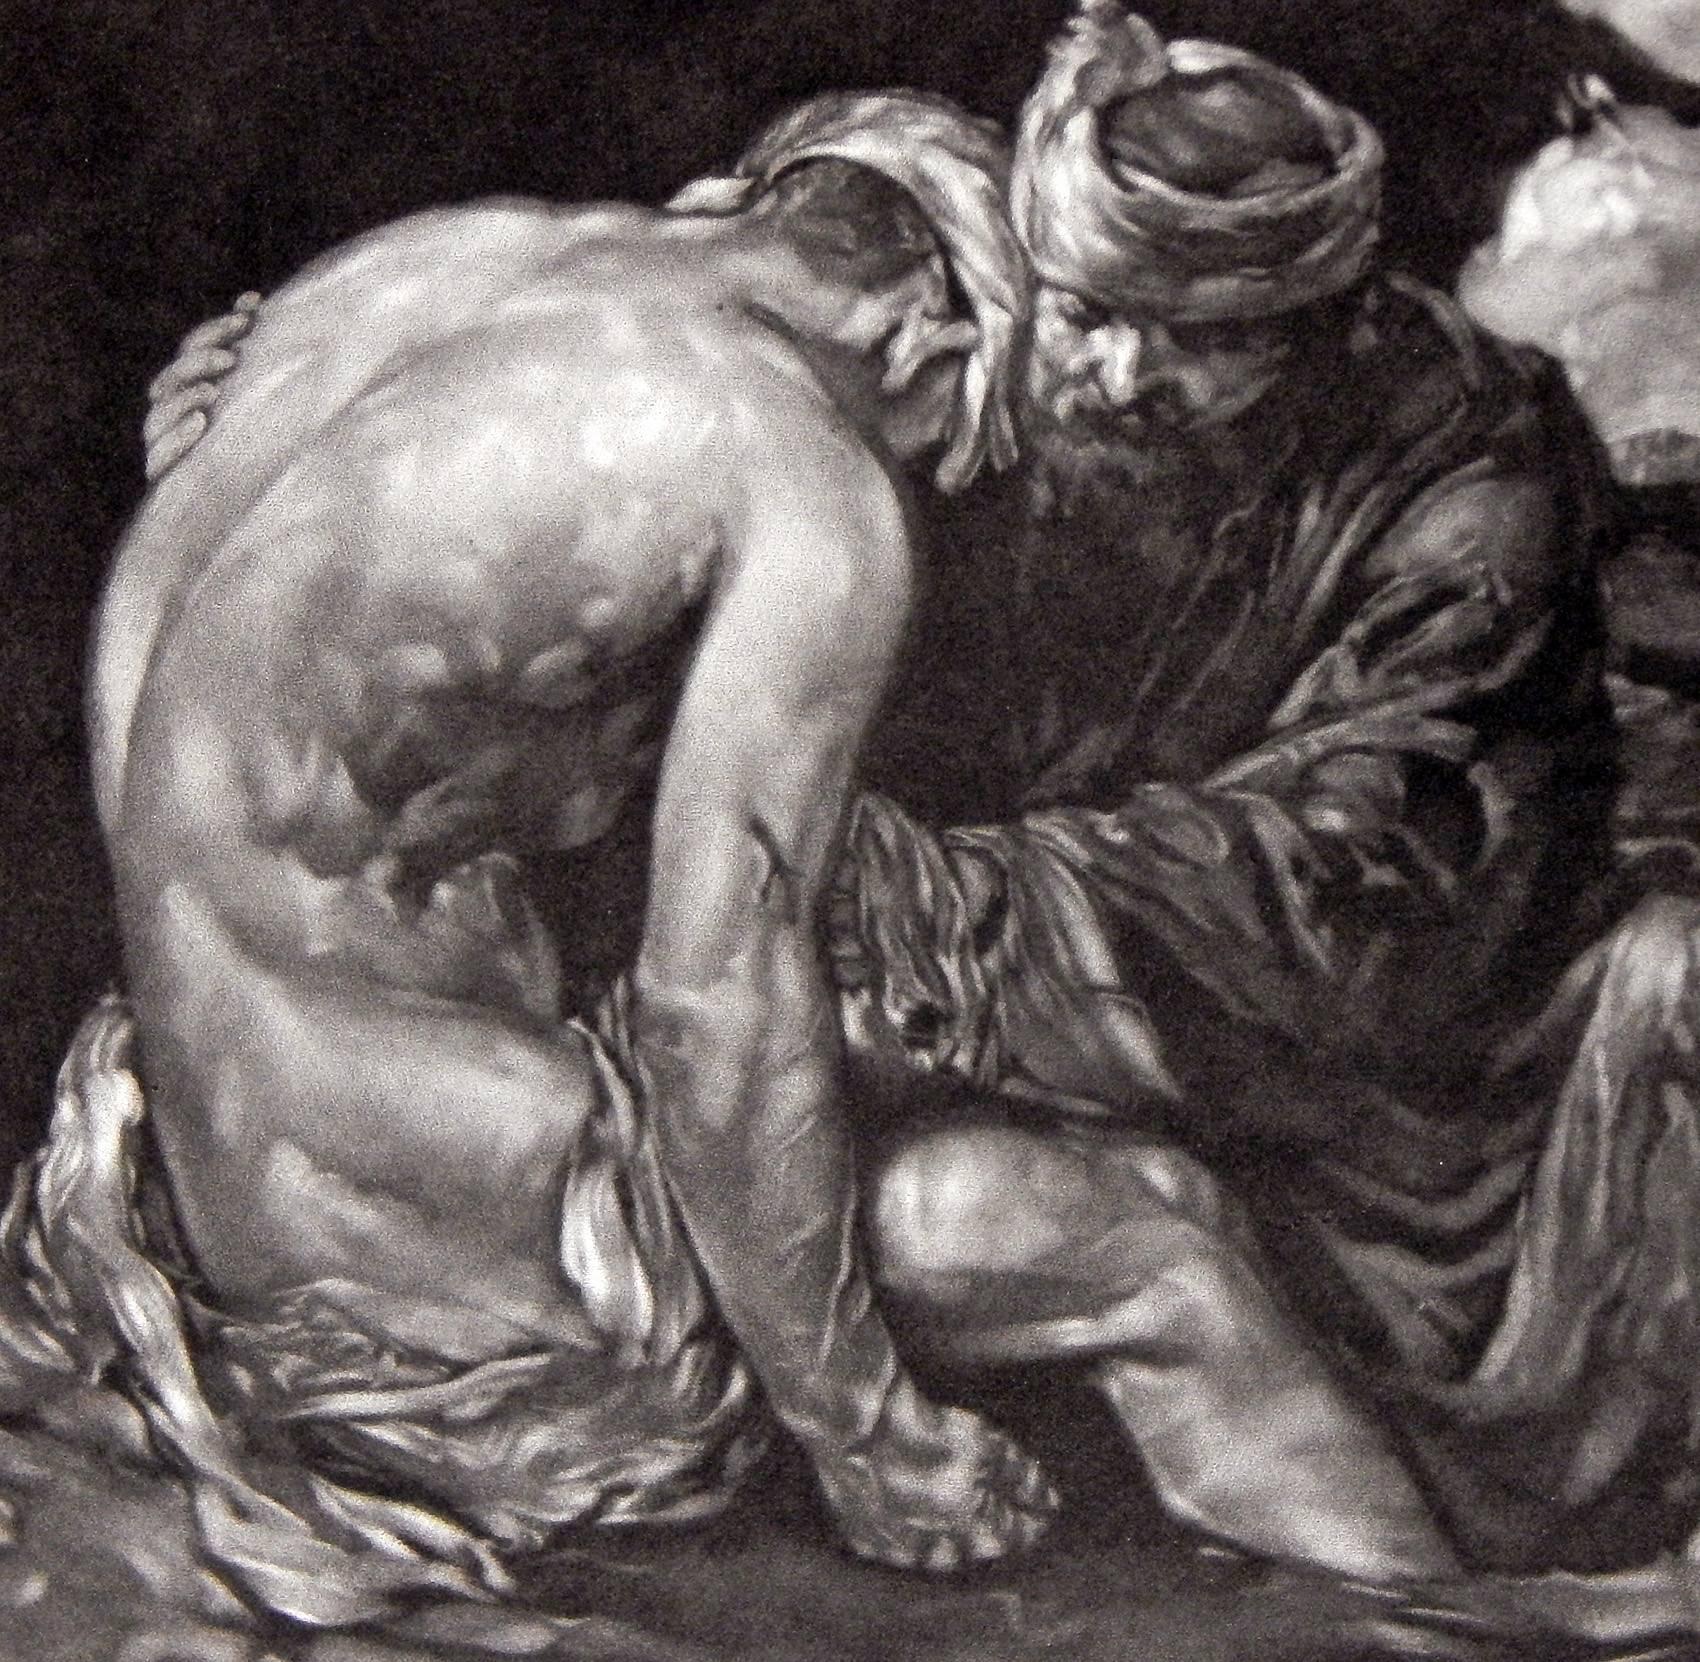 Dieses außergewöhnliche und seltene Schabkunstwerk des britischen Künstlers Robert Charles Peter zeigt eine nackte männliche Figur, die geschlagen und abgenutzt ist und von dem sprichwörtlichen barmherzigen Samariter getröstet wird. Die Beherrschung